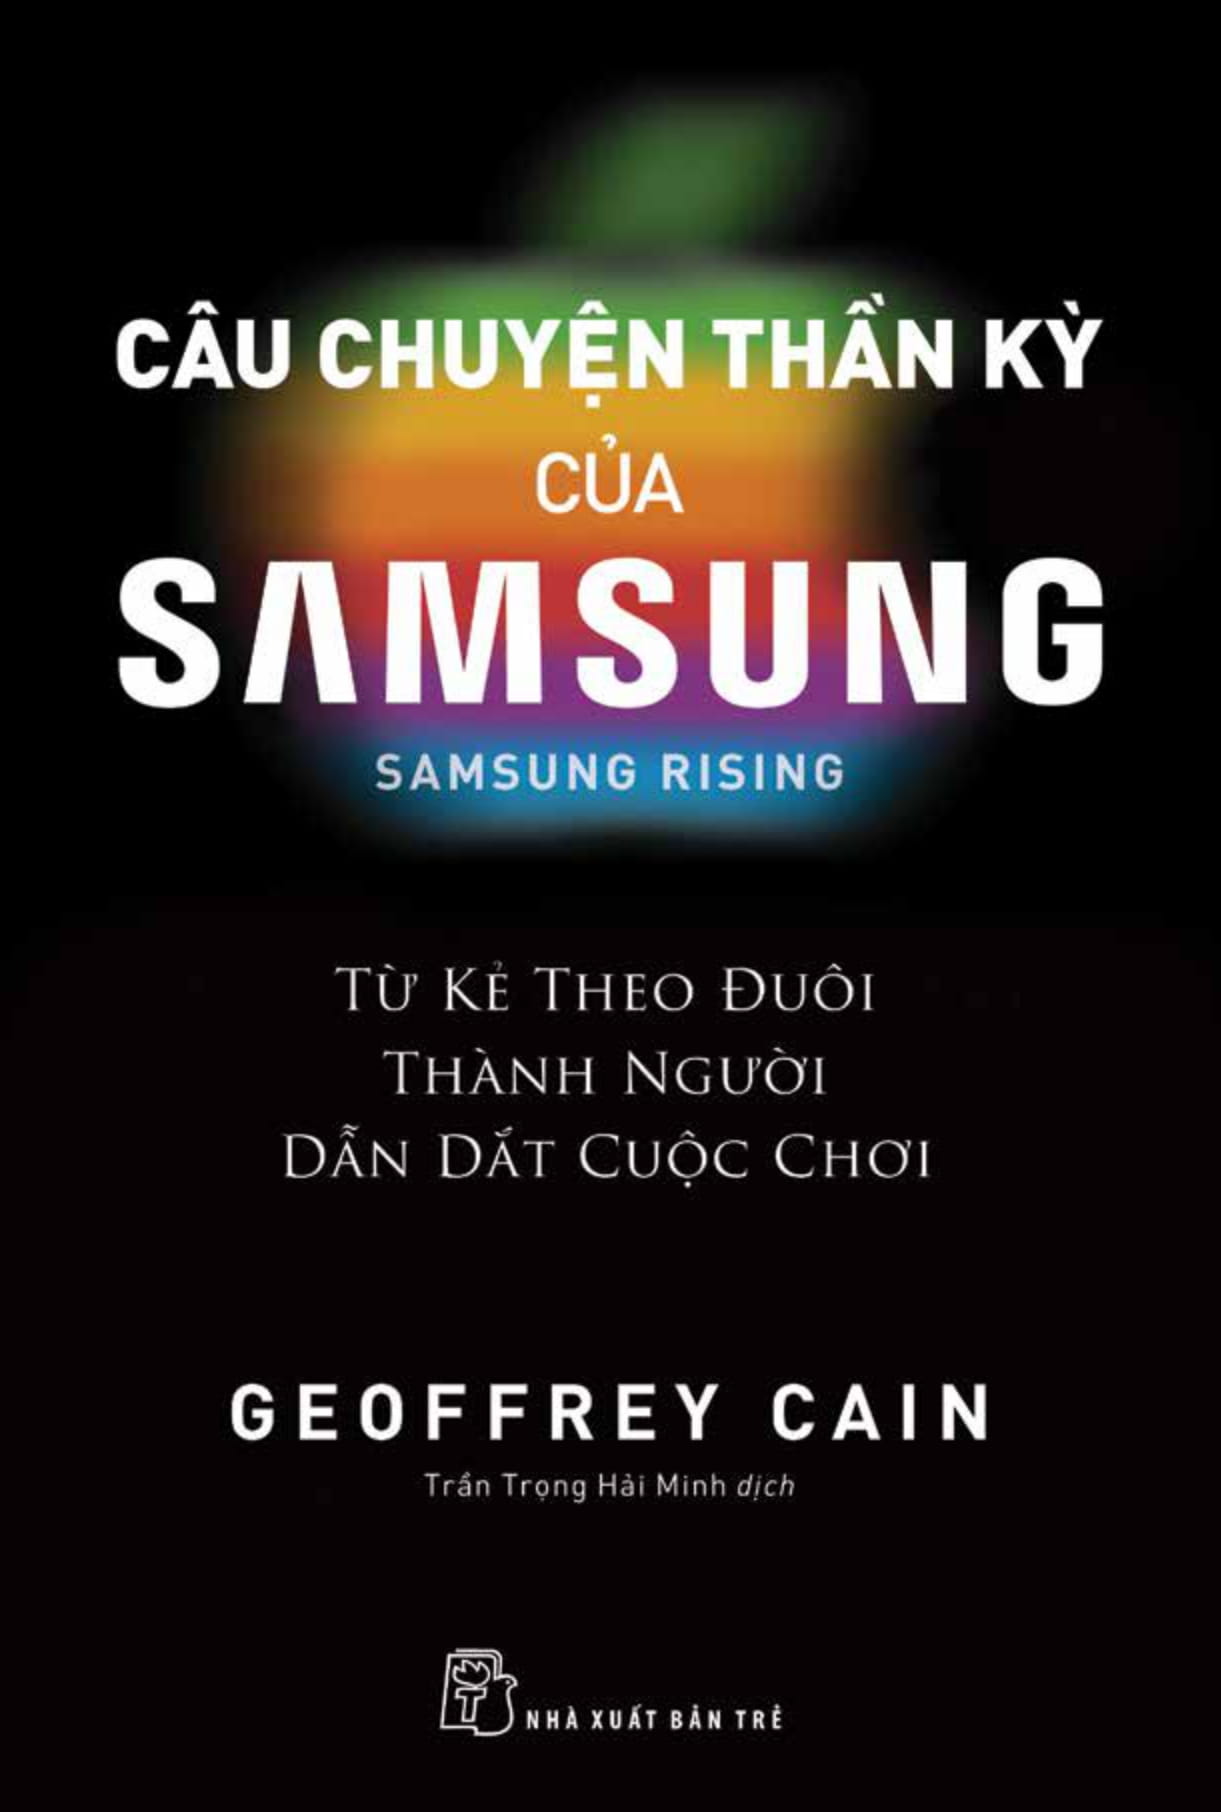 Câu Chuyện Thần Kỳ Của Samsung: Từ Kẻ Theo Đuôi Thành Người Dẫn Dắt - Samsung Rising PDF